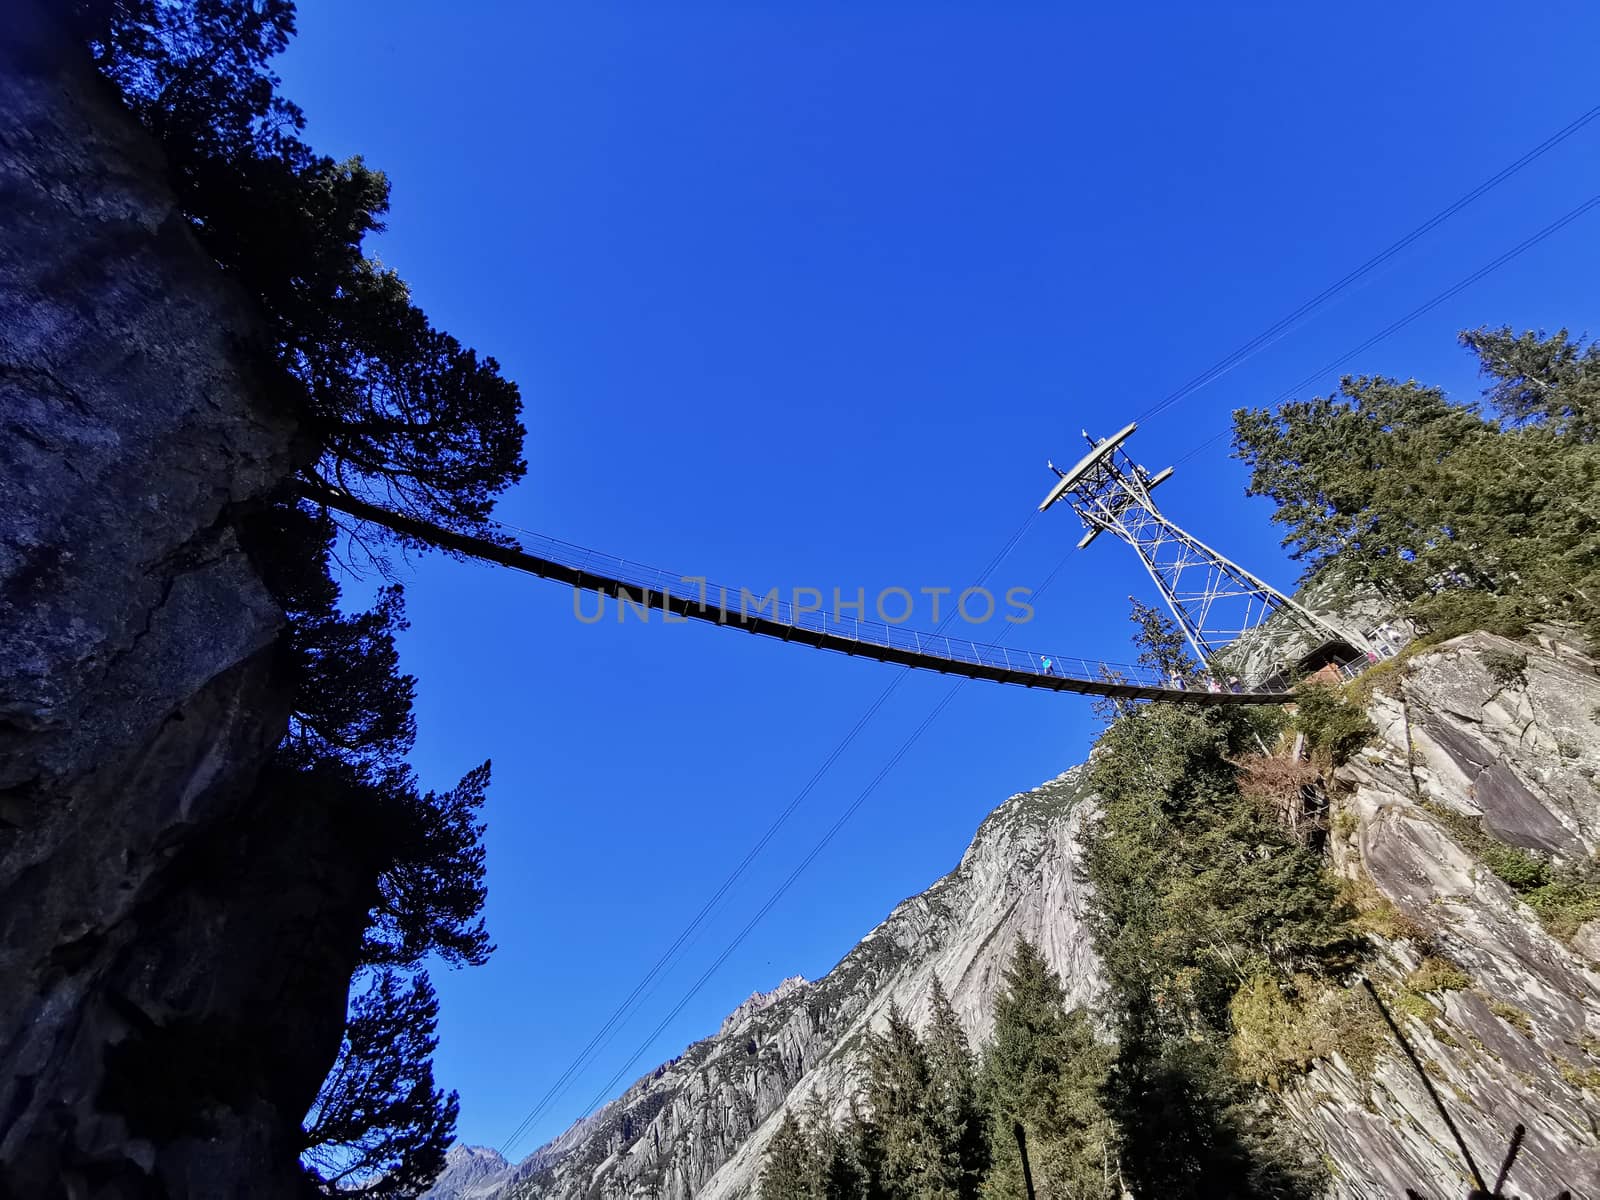 Hanging bridge over a valley. Path between rocks.